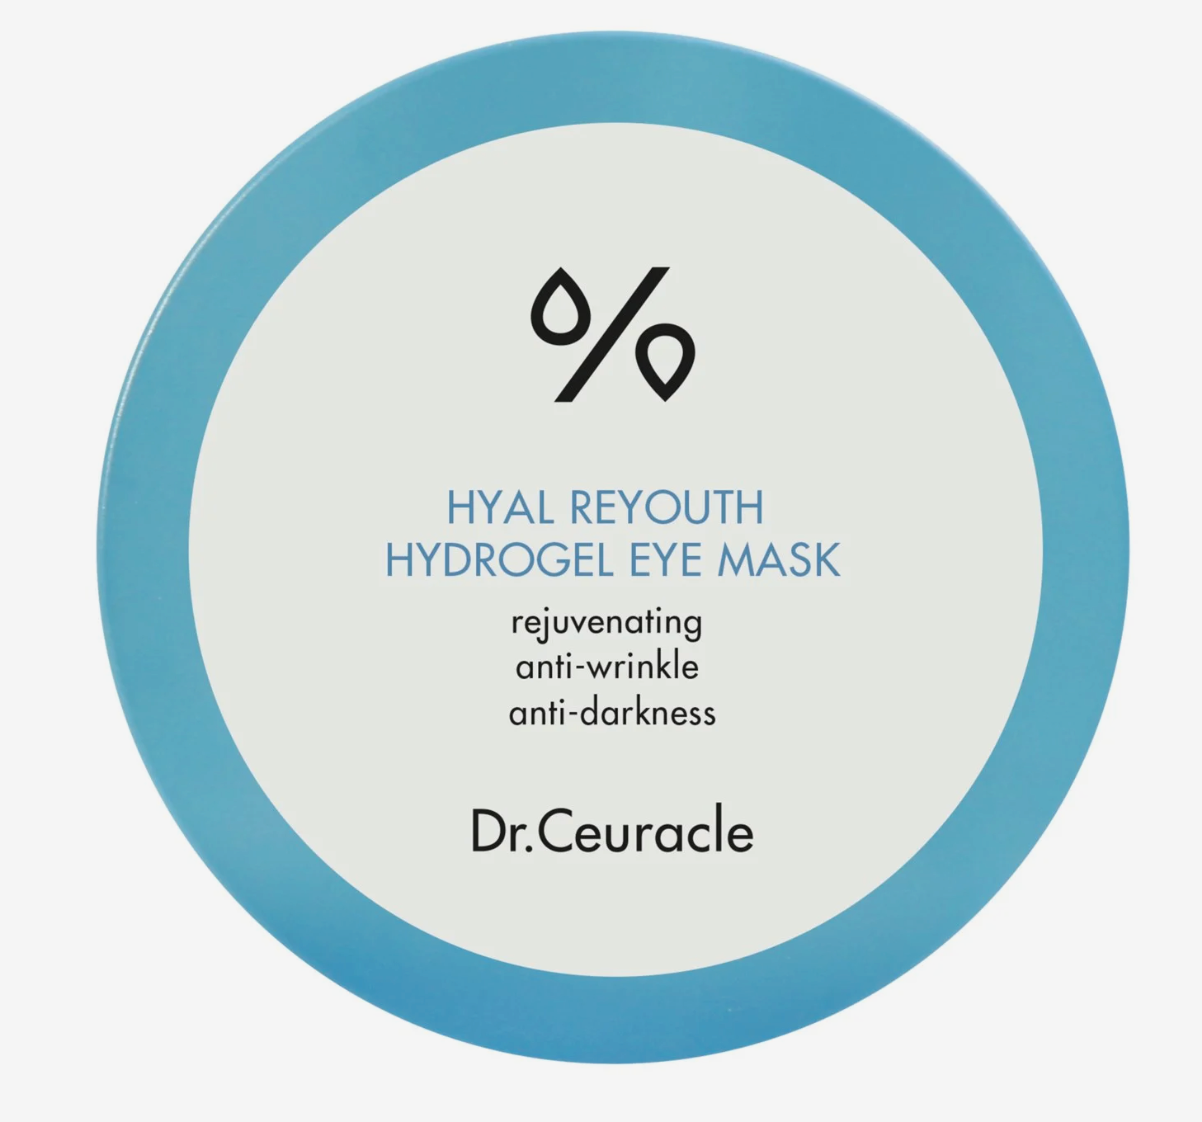 Hyal reyouth hydrogel eye mask